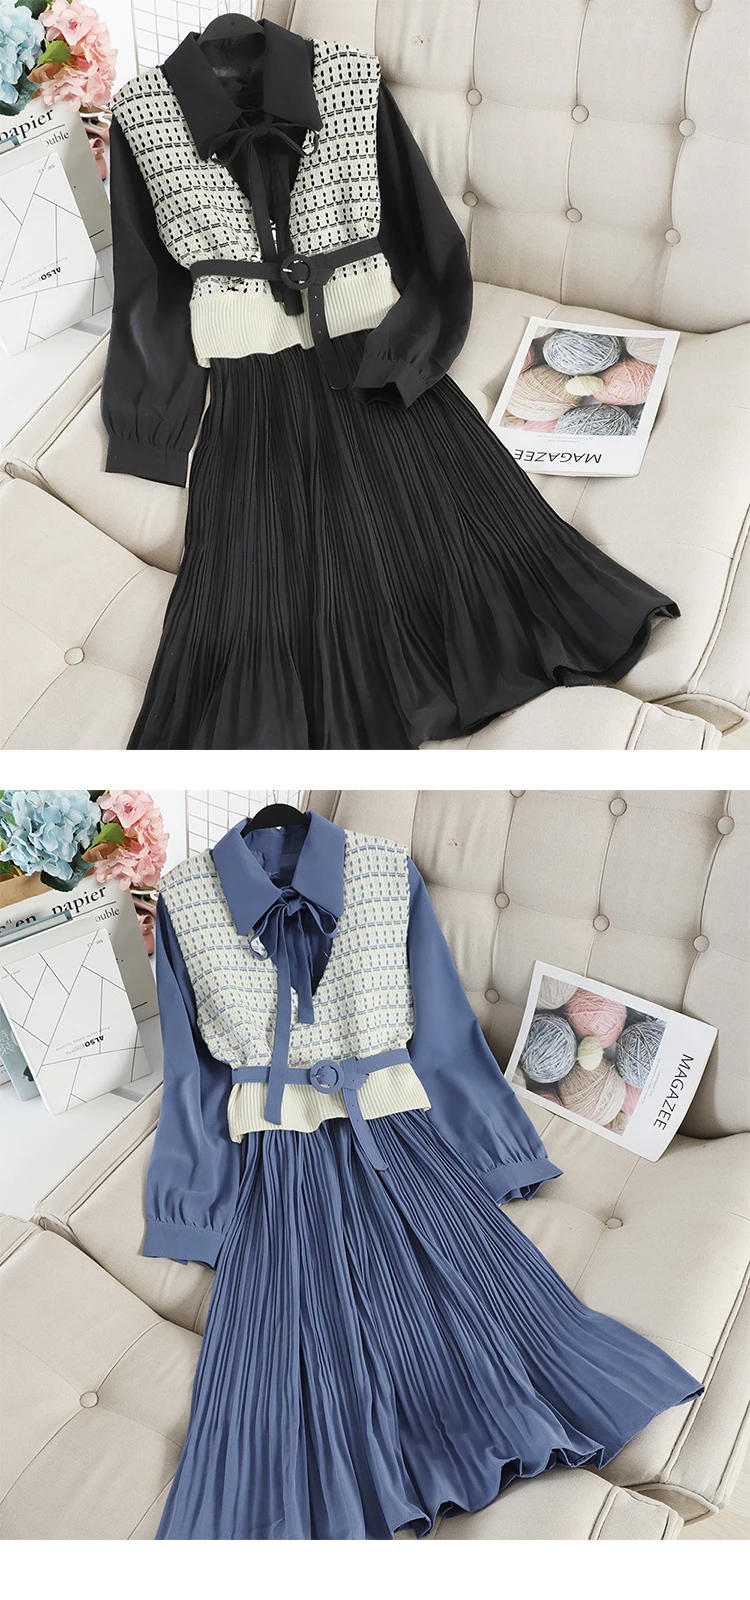 SINGRAIN женское длинное Плиссированное Платье-рубашка+ вязаный свитер с принтом корейское романтическое элегантное осеннее шифоновое платье трапециевидной формы из двух частей